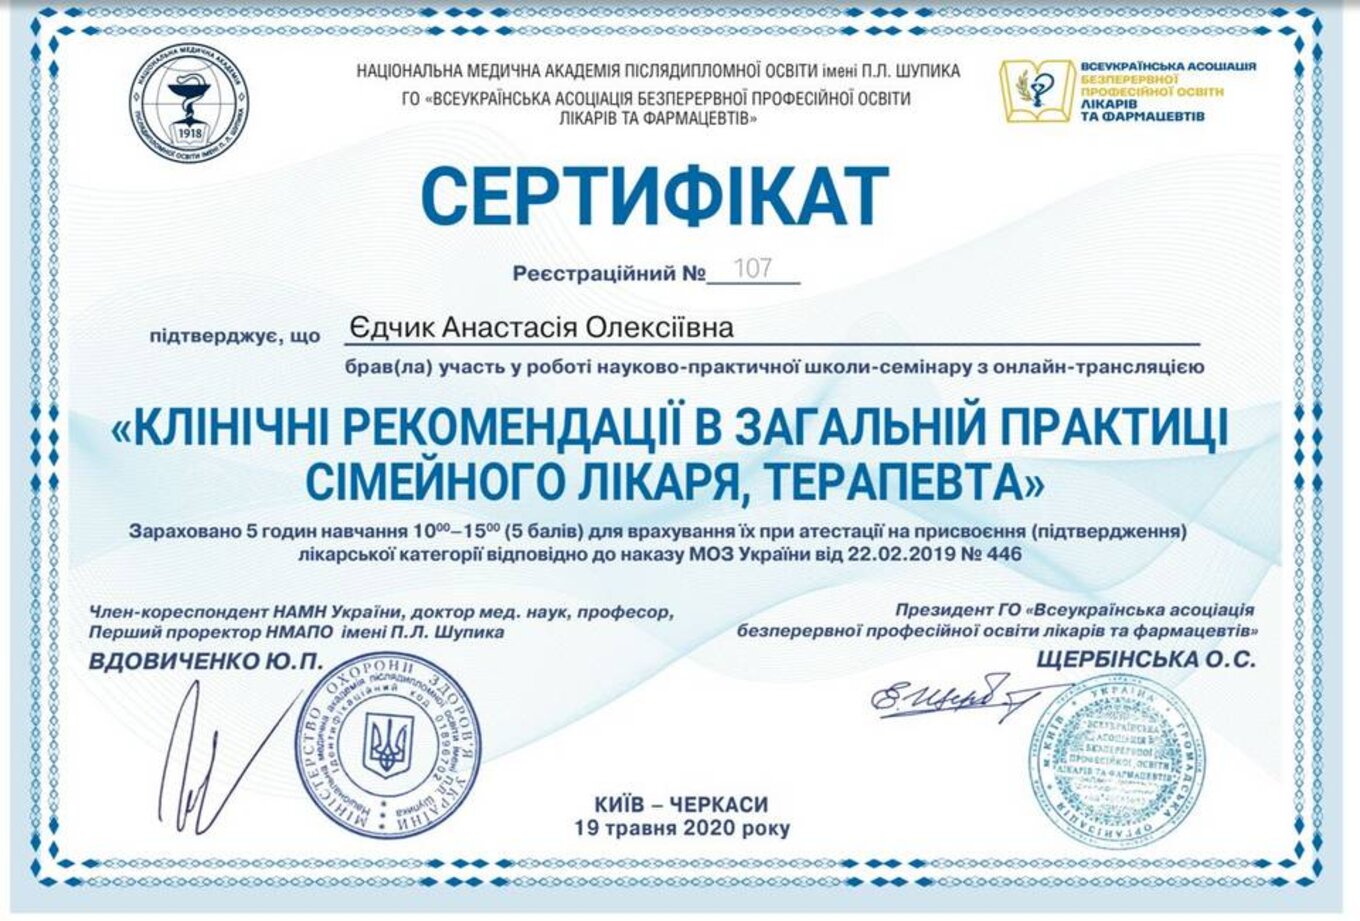 certificates/yedchik-anastasiya-oleksiyivna/erc-edchik-cert-29.jpg